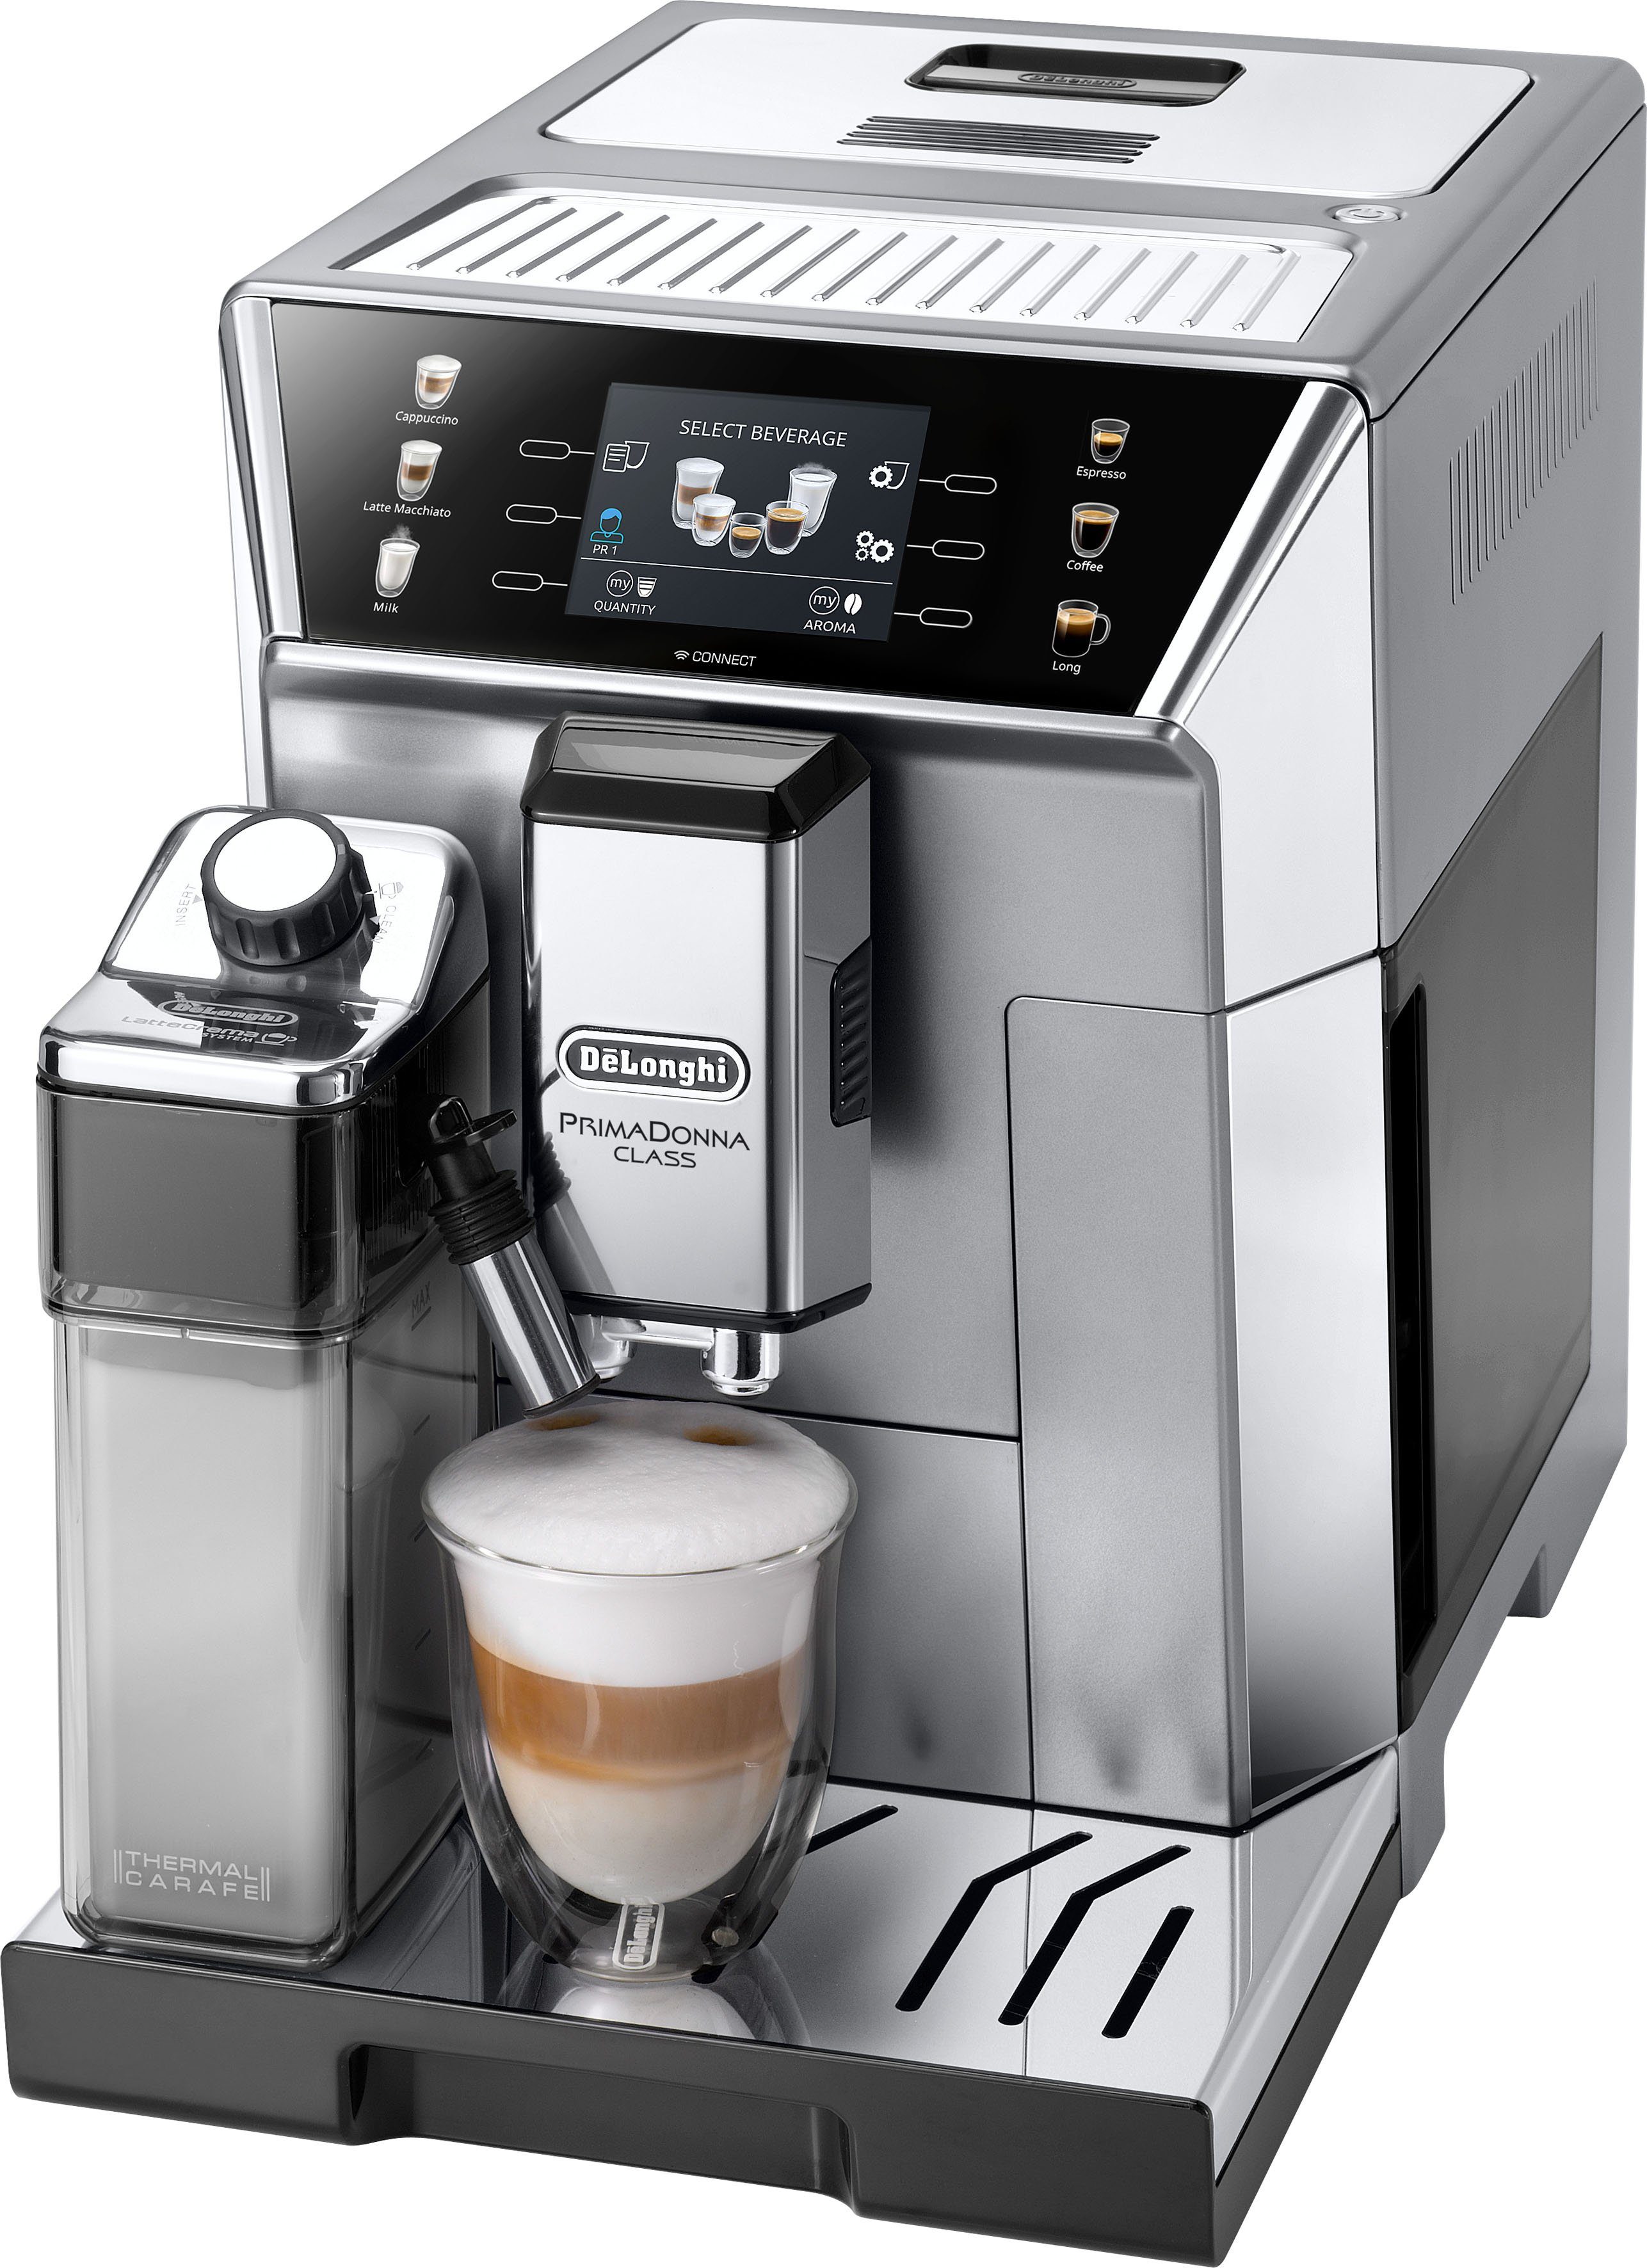 Kaffeevollautomat kaufen » Kaffee auf Knopfdruck | OTTO